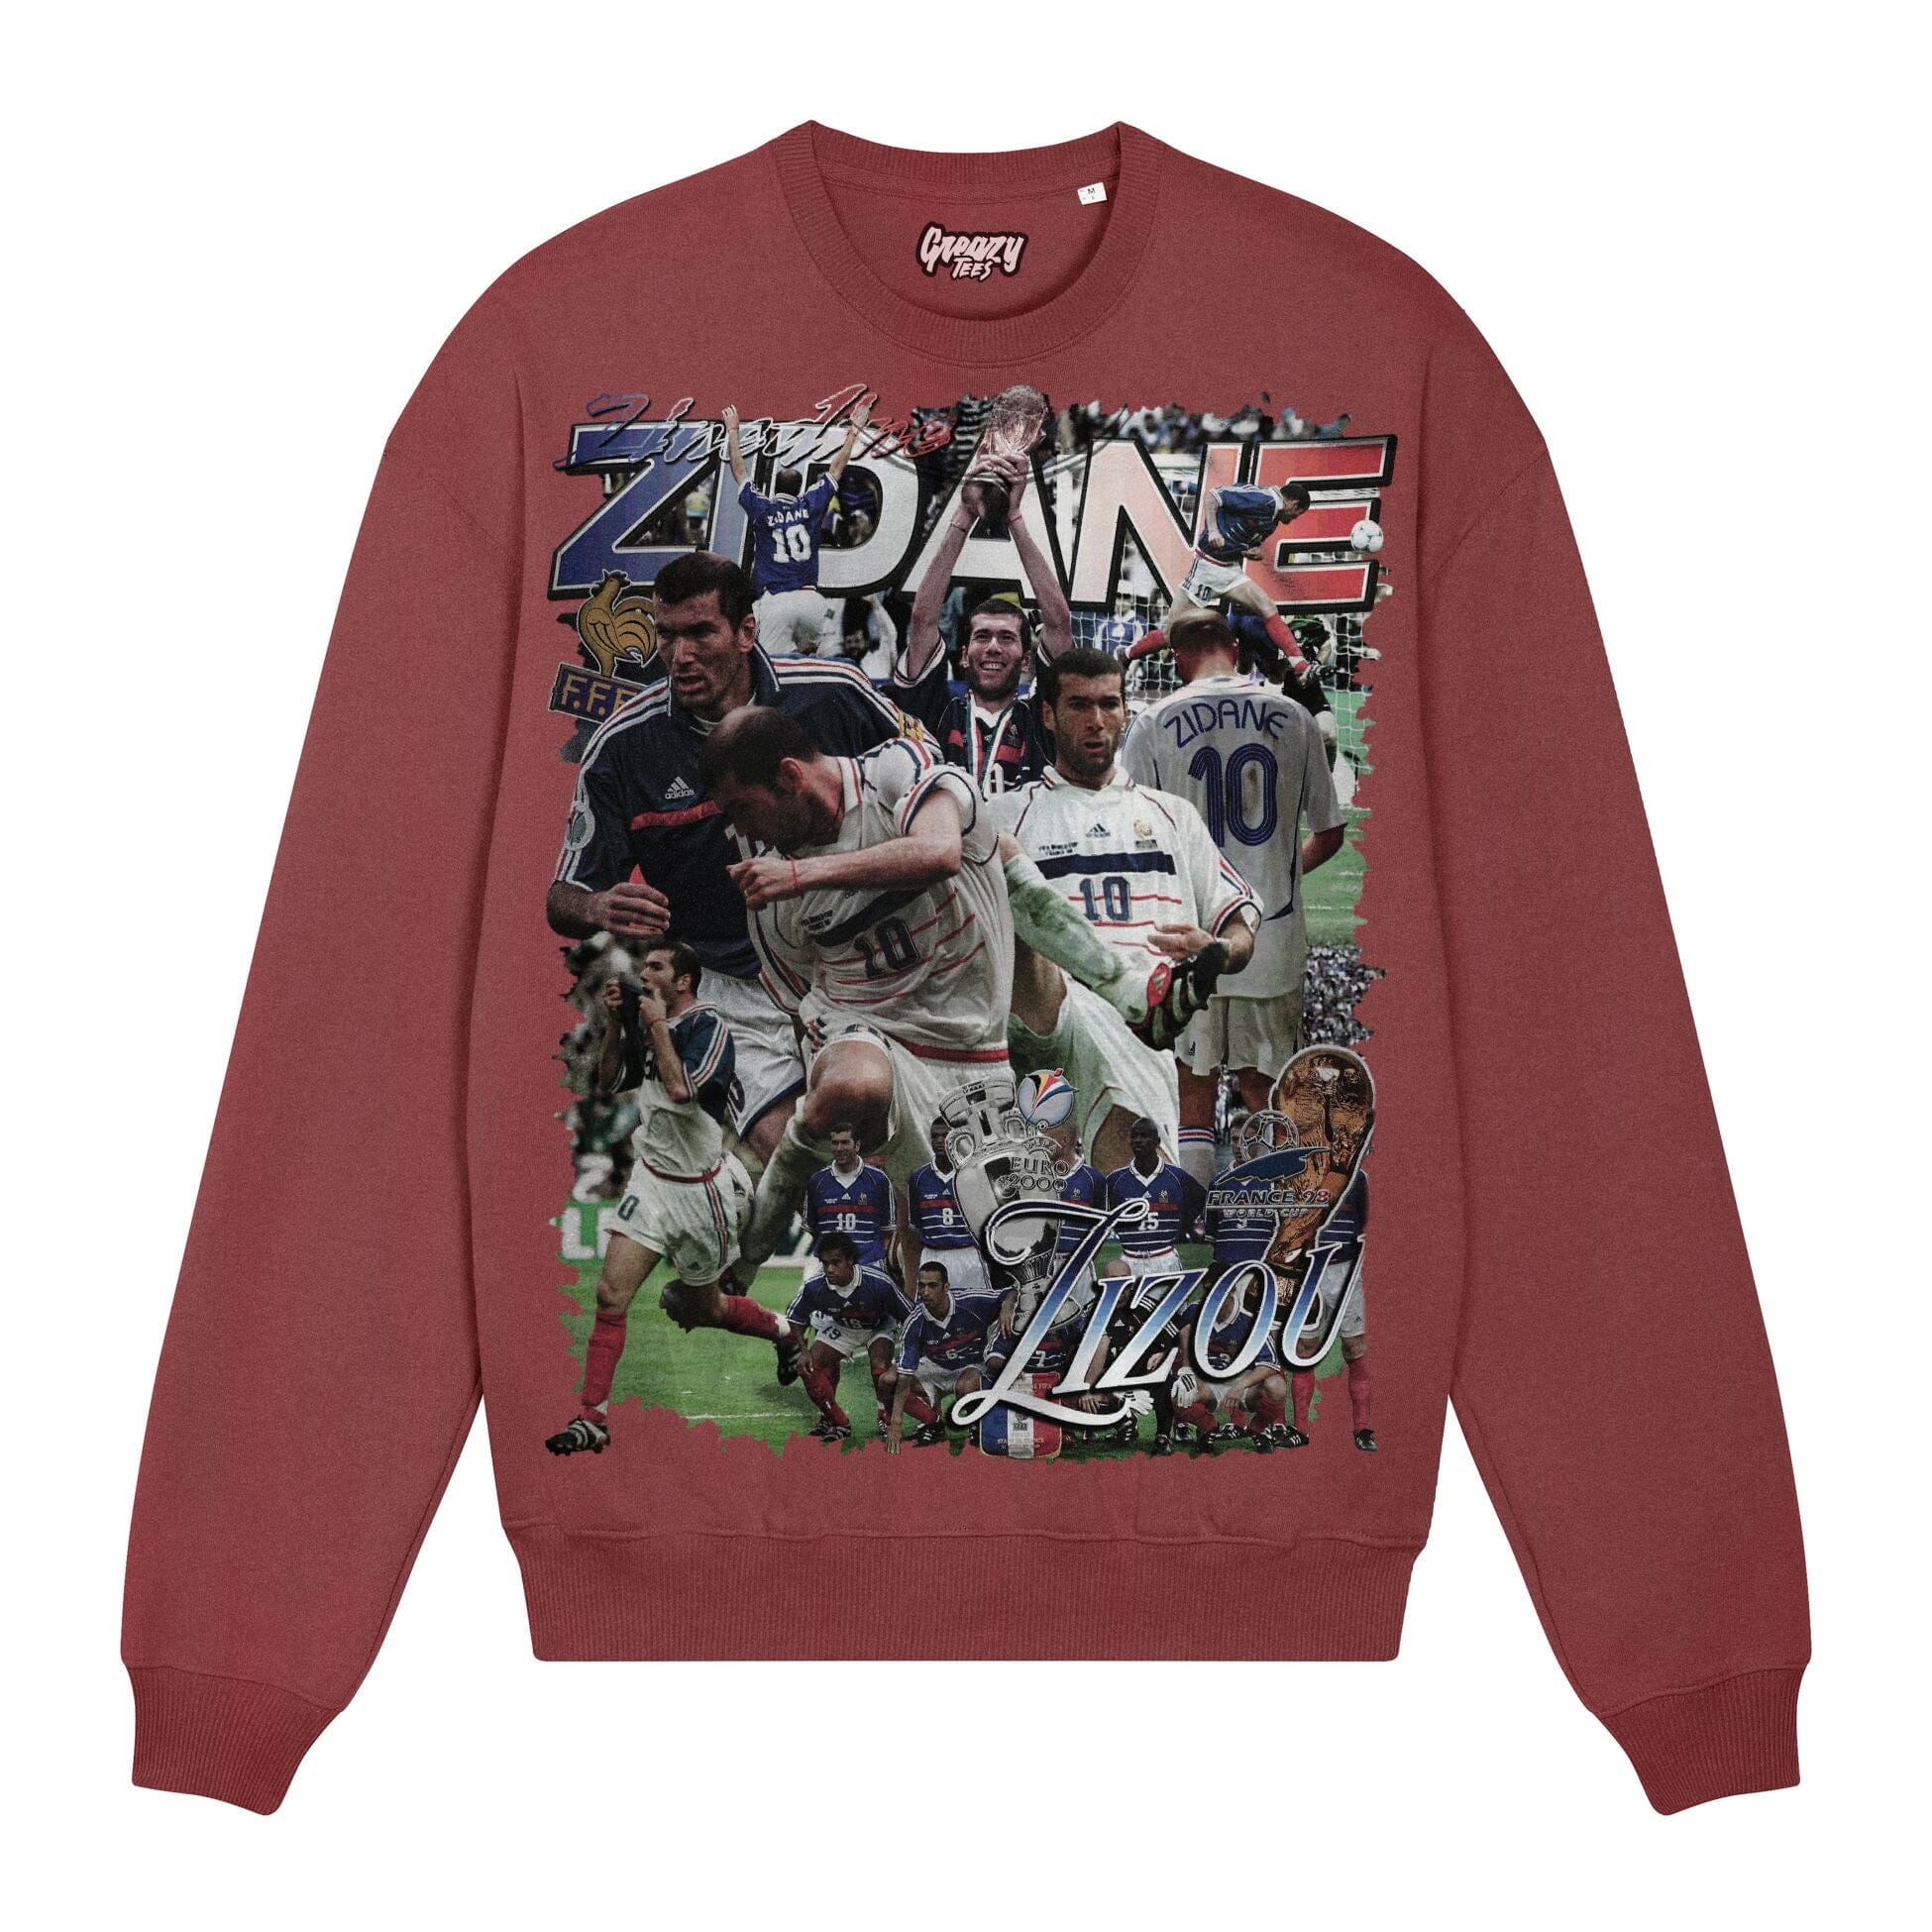 Zidane Sweatshirt Sweatshirt Greazy Tees XS Burgundy Oversized